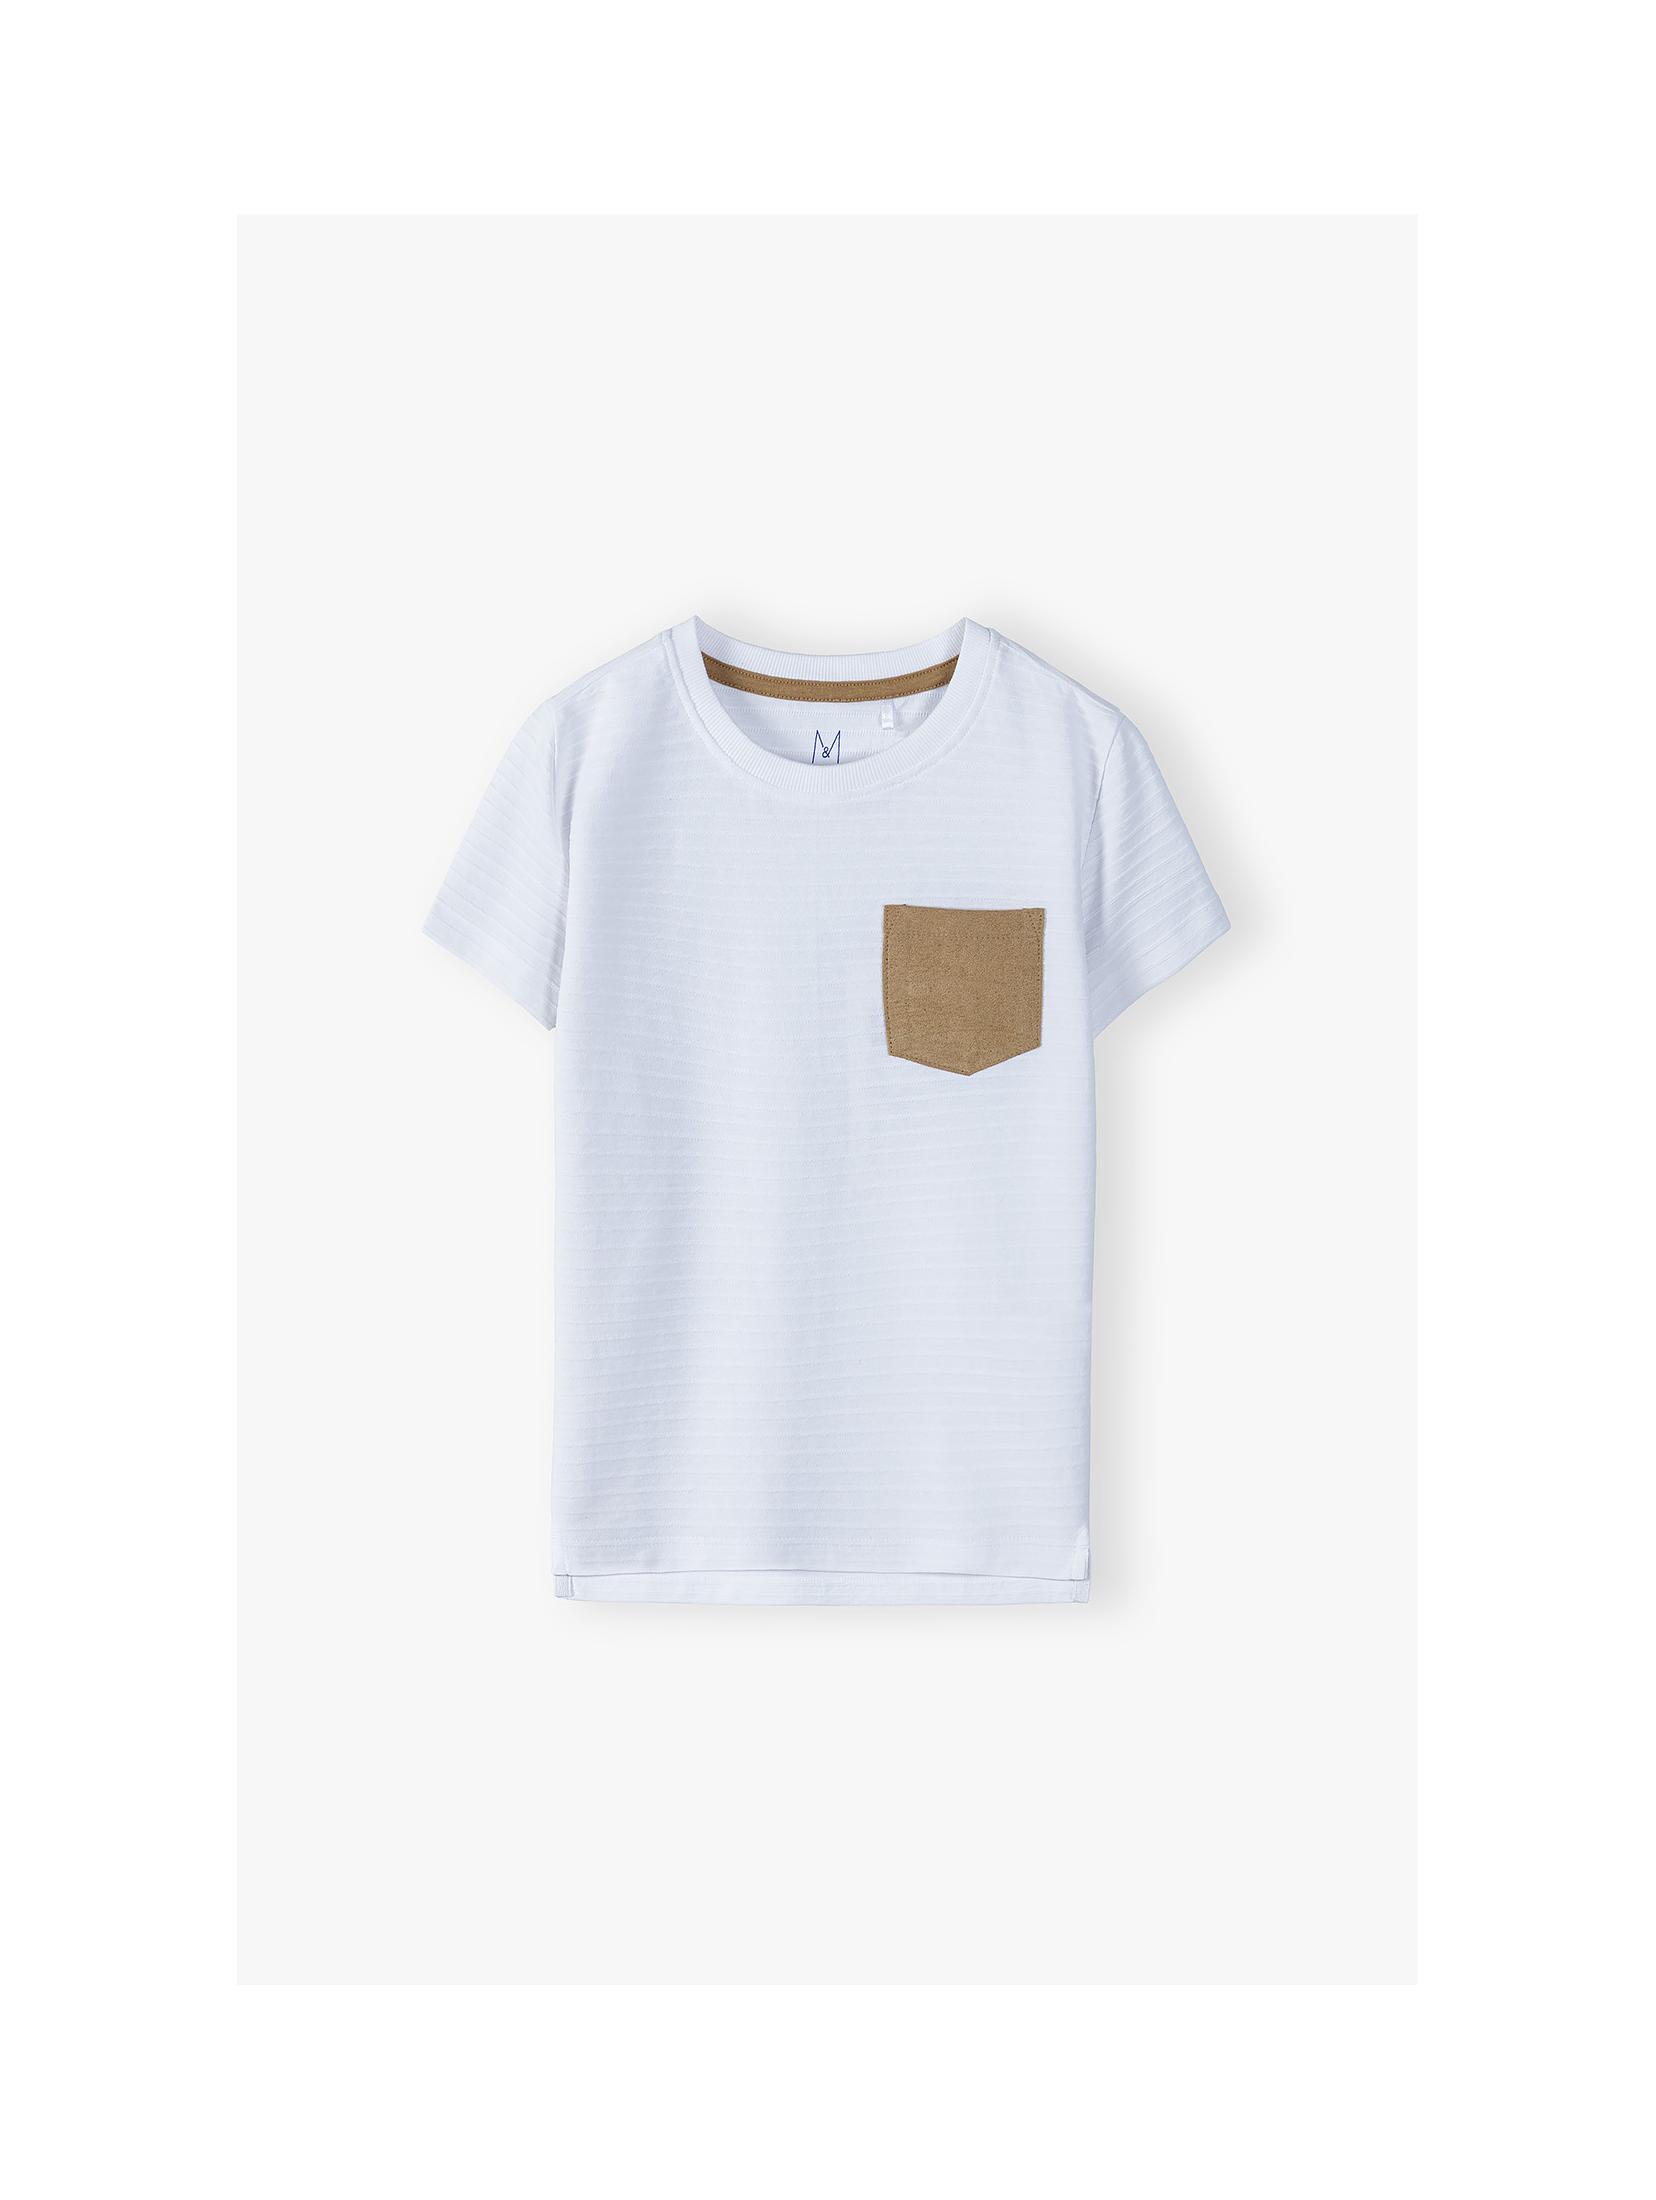 Bawełniany prążkowany t-shirt chłopięcy z ozdobną kieszonką - biały